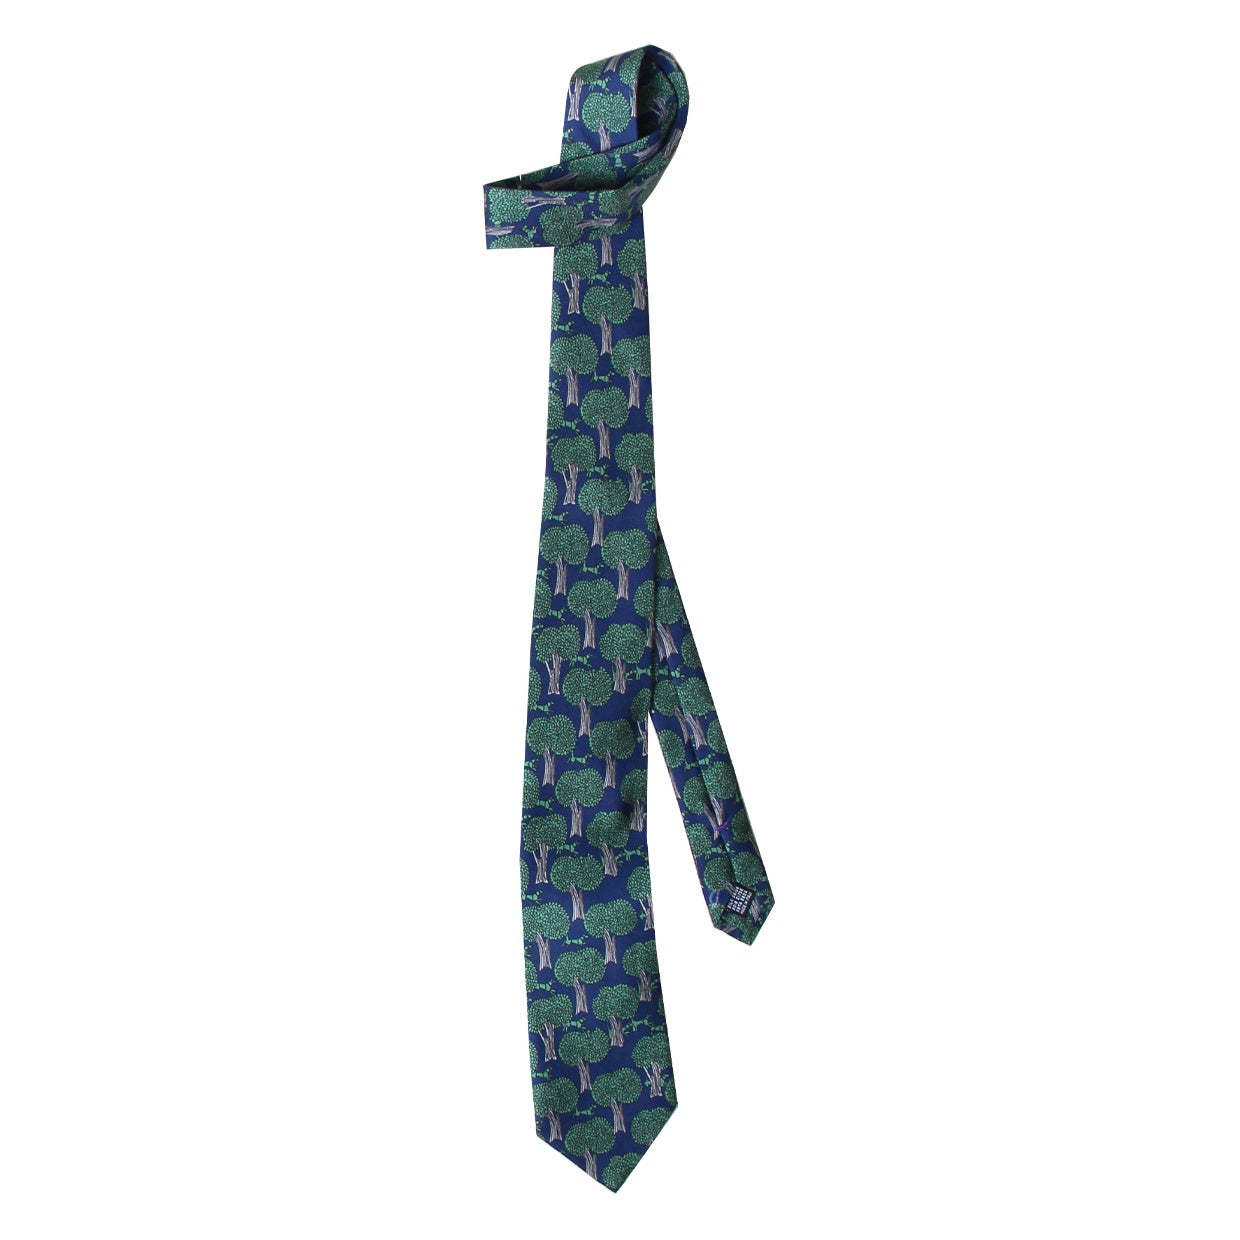 Cravate Parure madder imprimé Laisser Courre - Marine motif mousse grège